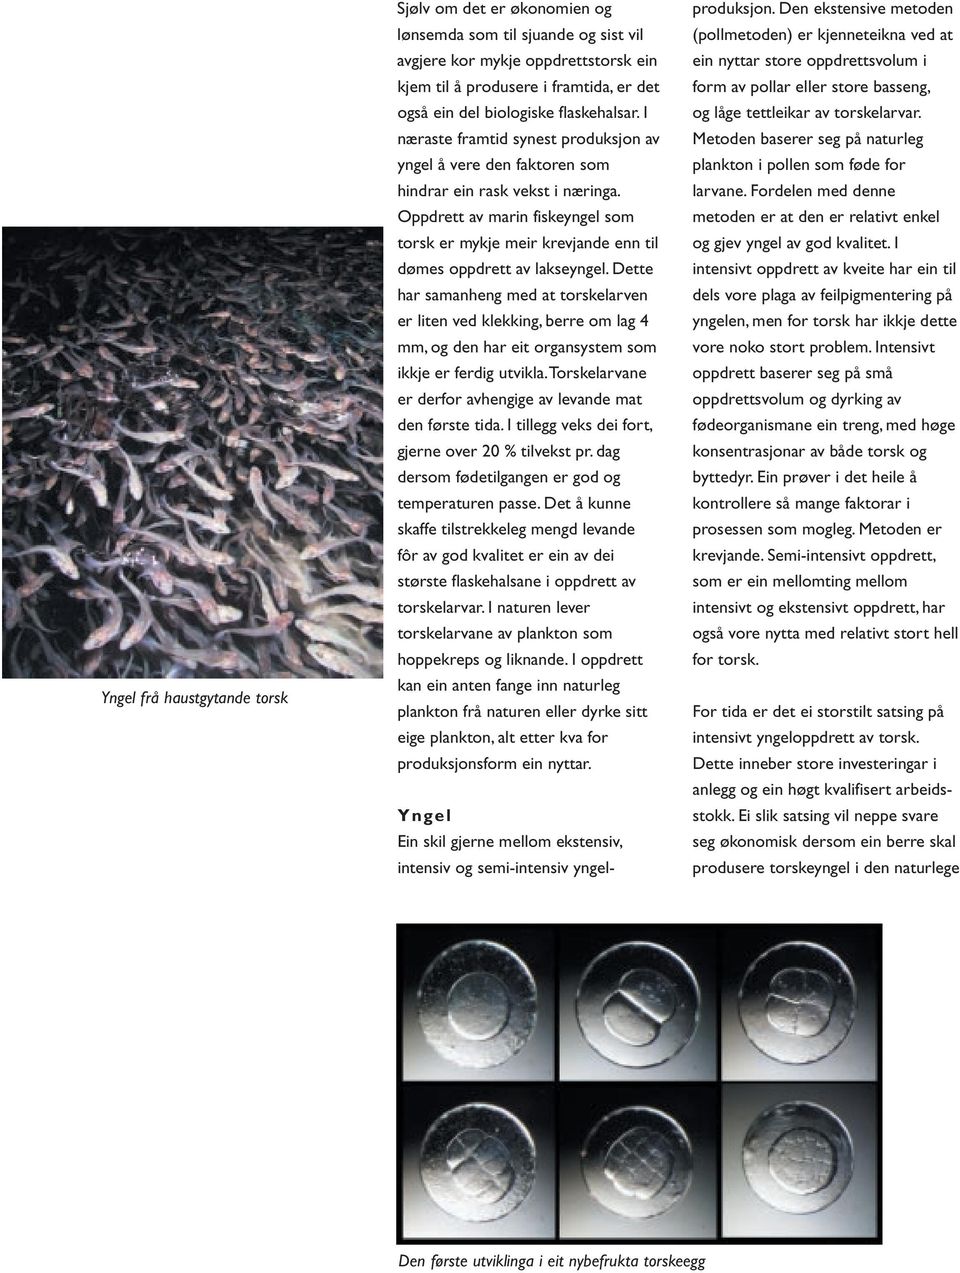 Oppdrett av marin fiskeyngel som torsk er mykje meir krevjande enn til dømes oppdrett av lakseyngel.